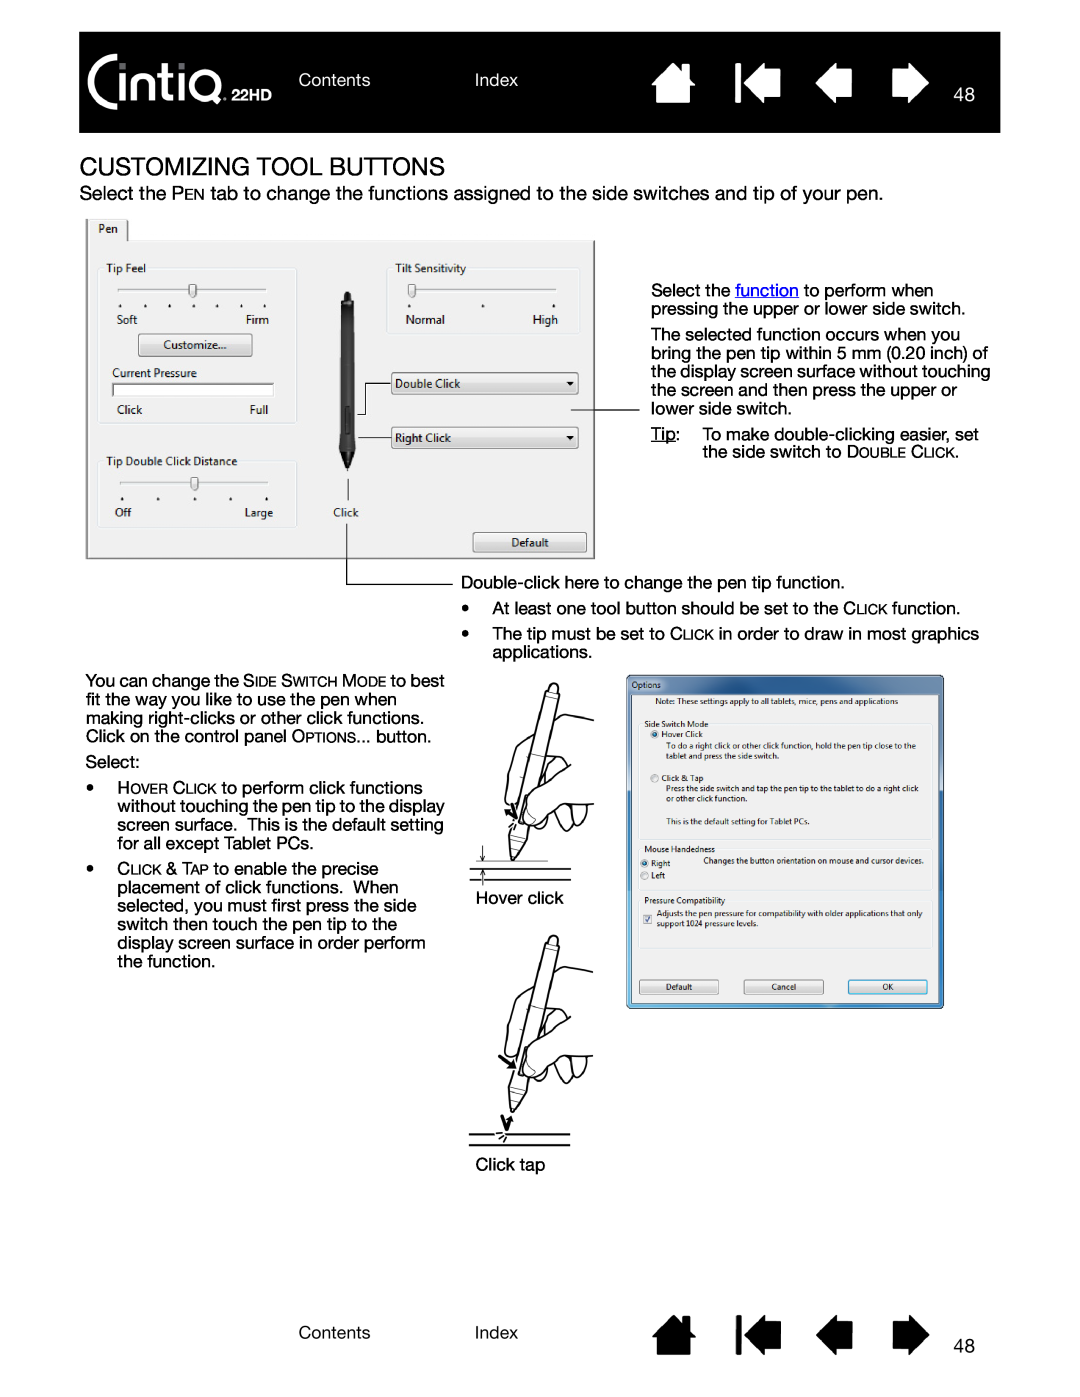 Wacom DTK-2200 user manual Customizing Tool Buttons, ContentsIndex 